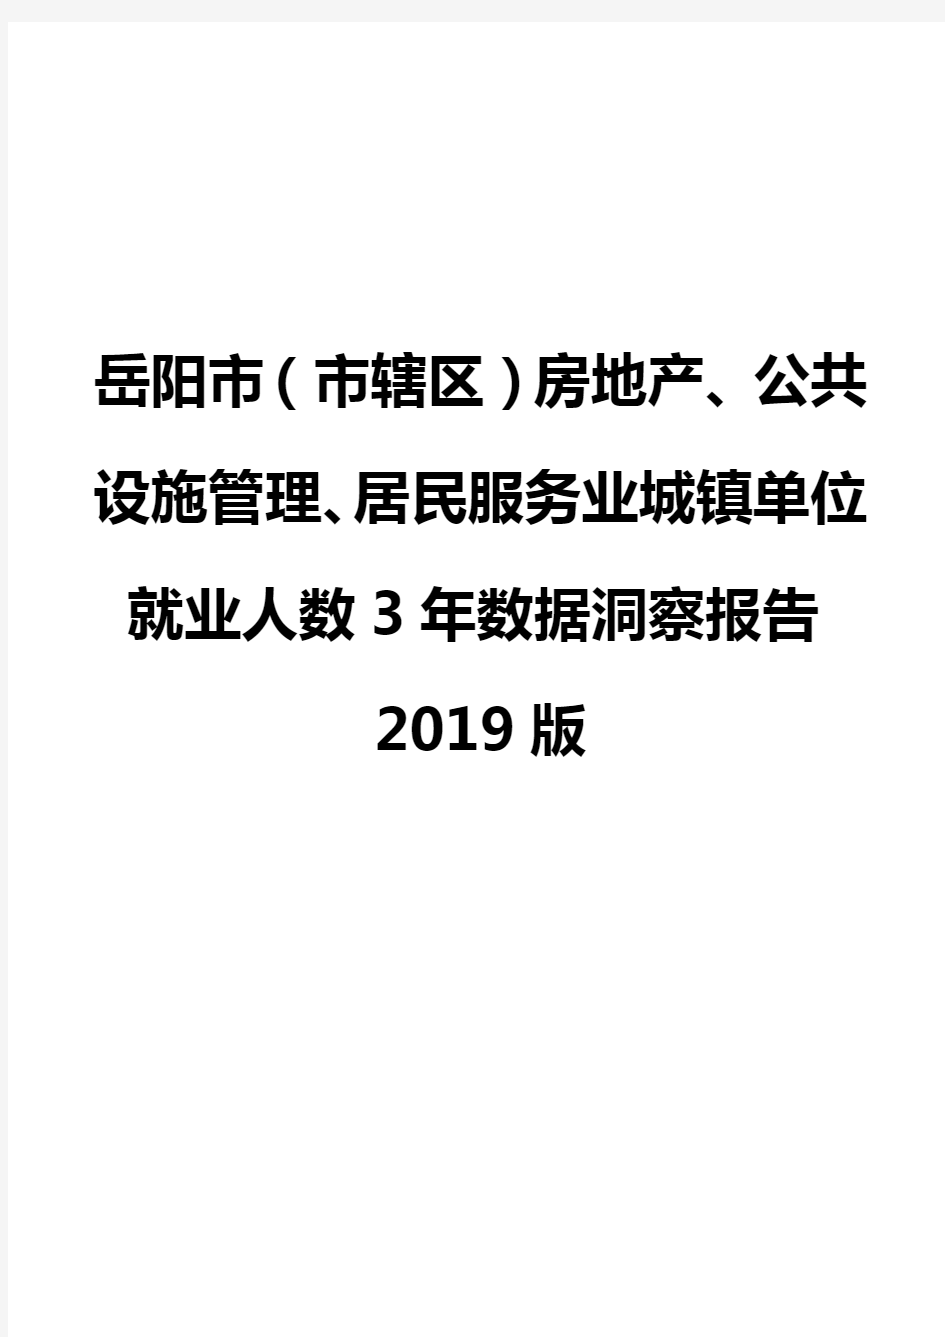 岳阳市(市辖区)房地产、公共设施管理、居民服务业城镇单位就业人数3年数据洞察报告2019版